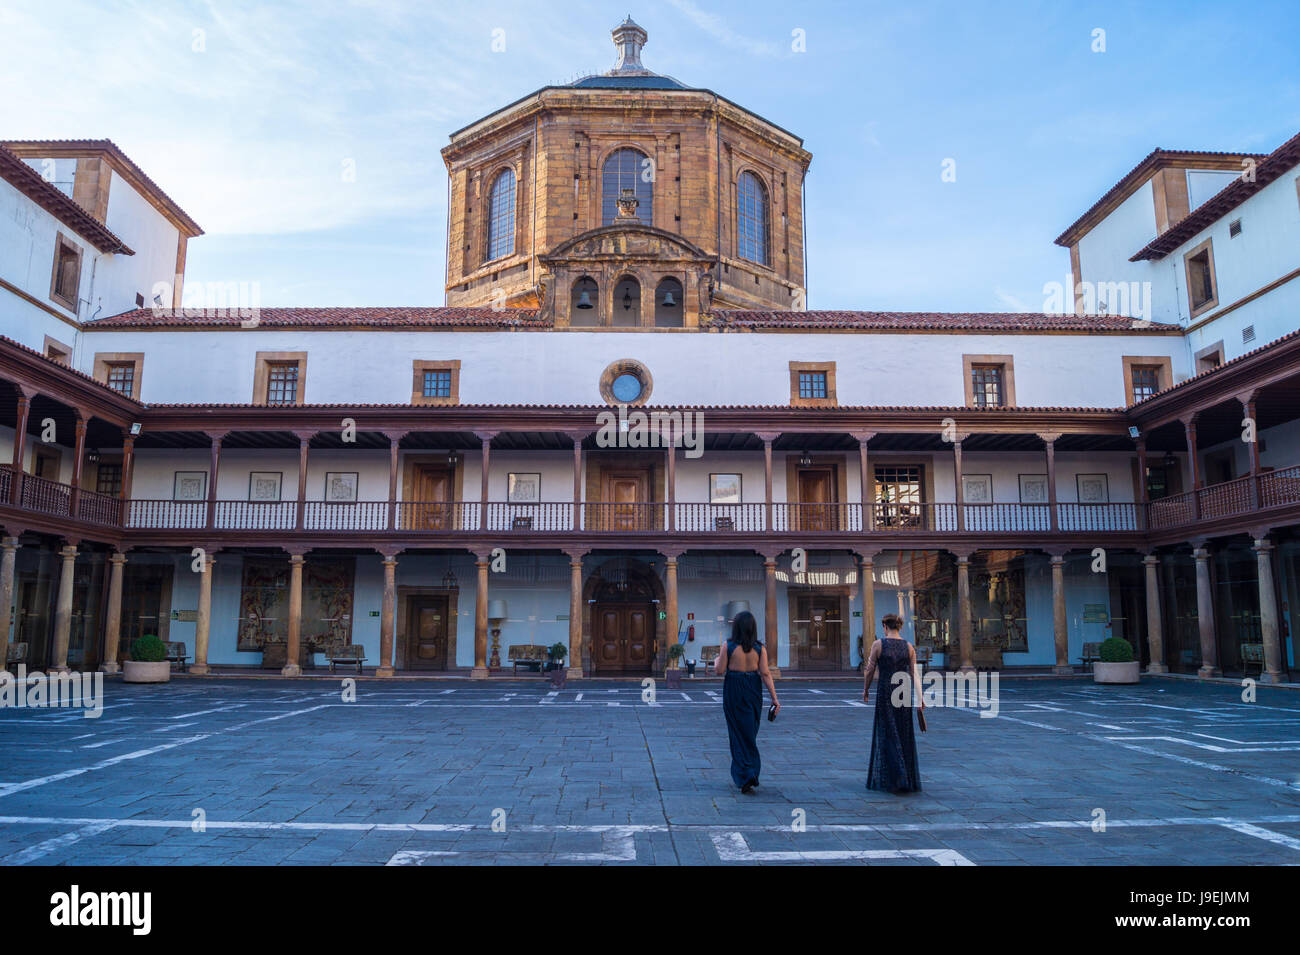 Eurostars Hotel de la Reconquista, l'ancien hôpital de style baroque espagnol par Pedro Antonio Menéndez de Ambás, 1752-70, Oviedo Asturies espagne au crépuscule Banque D'Images